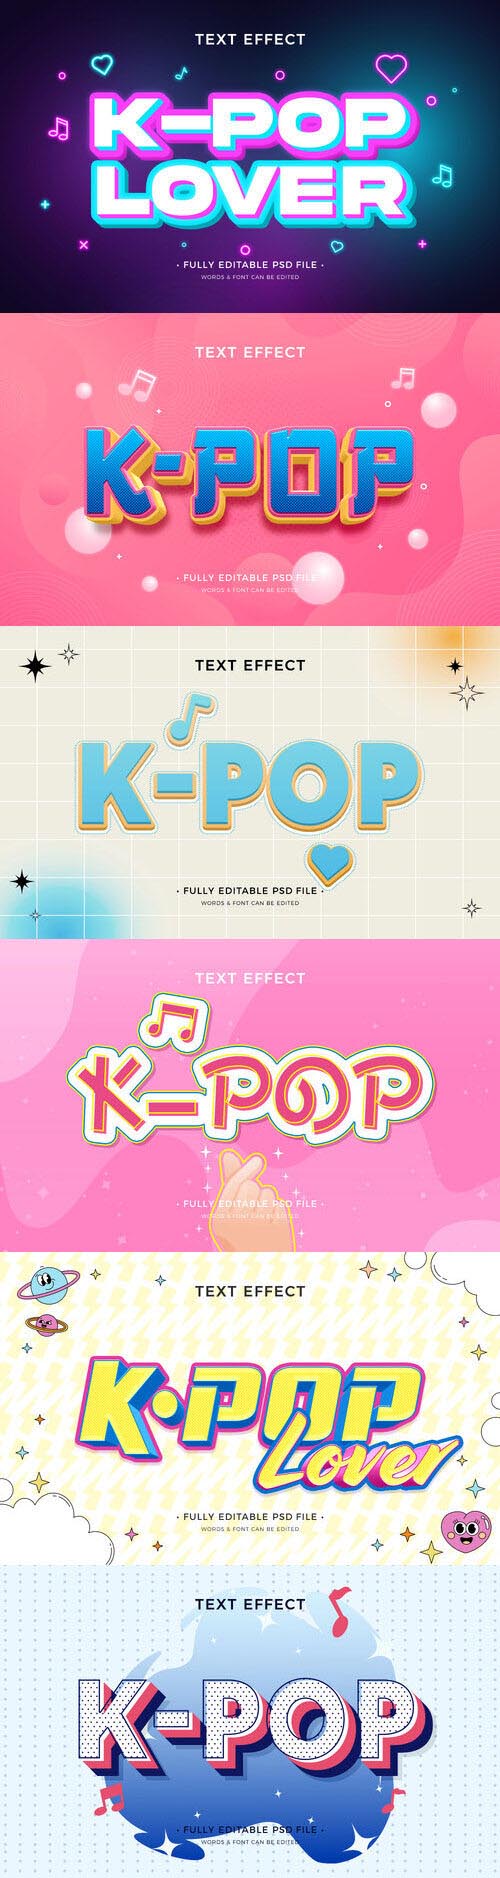 PSD k-pop text effect template set 